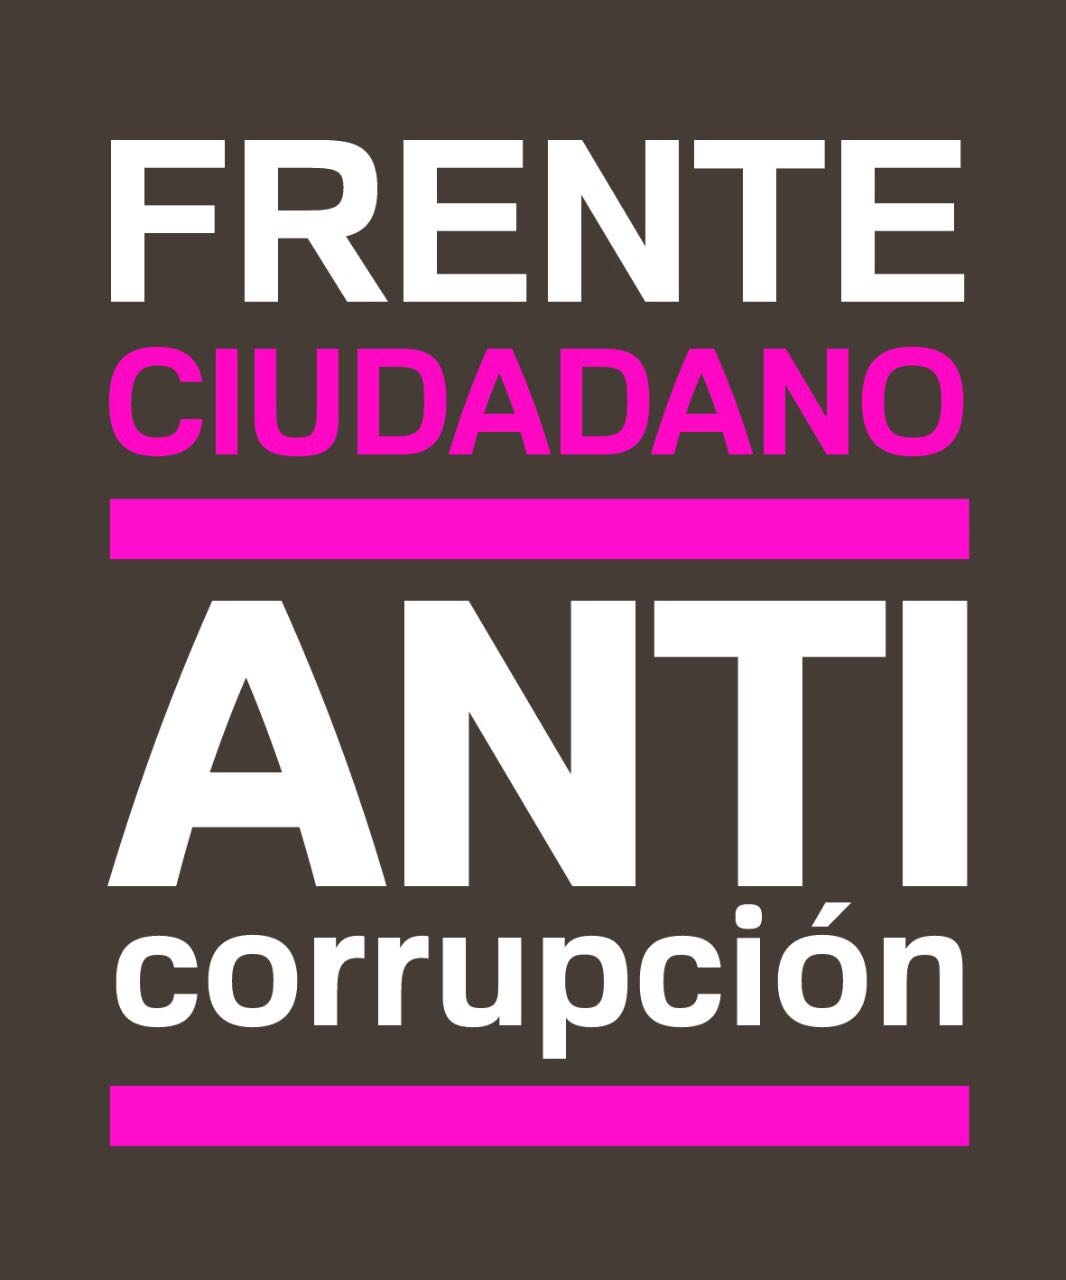  Frente Anticorrupción da seguimiento a denuncias ante Fiscalía